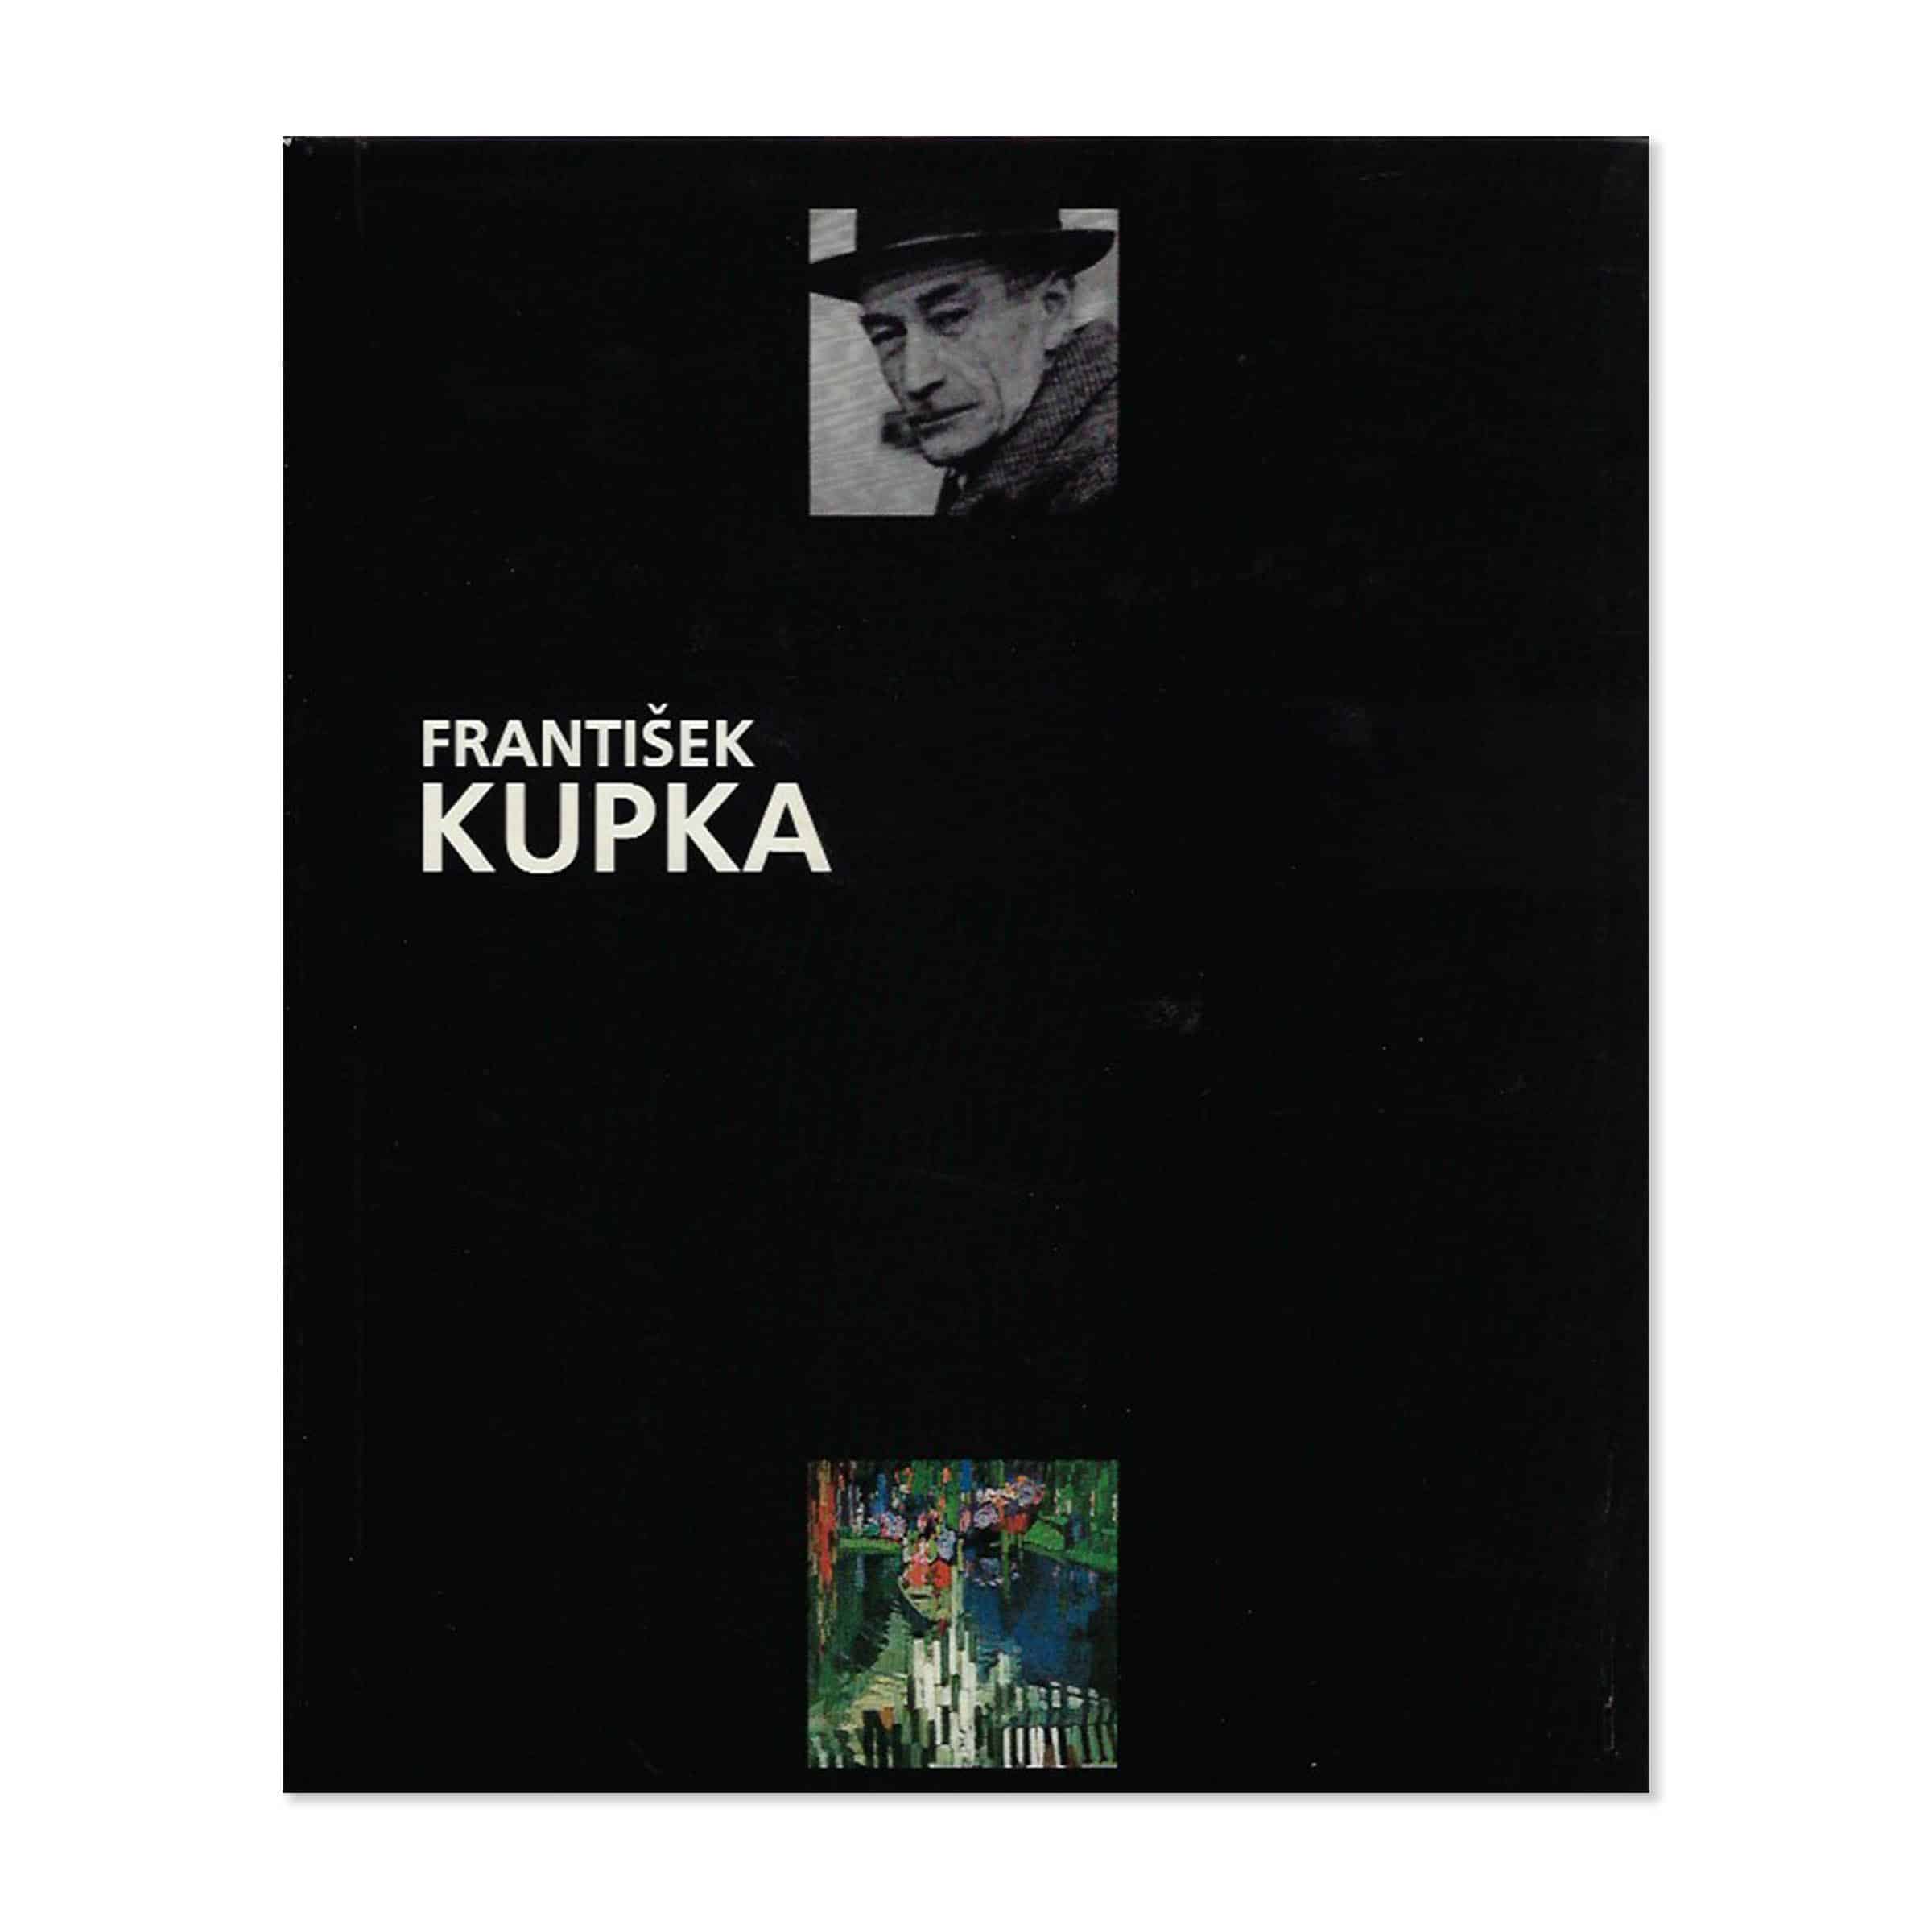 Frantisek Kupka. Cover view